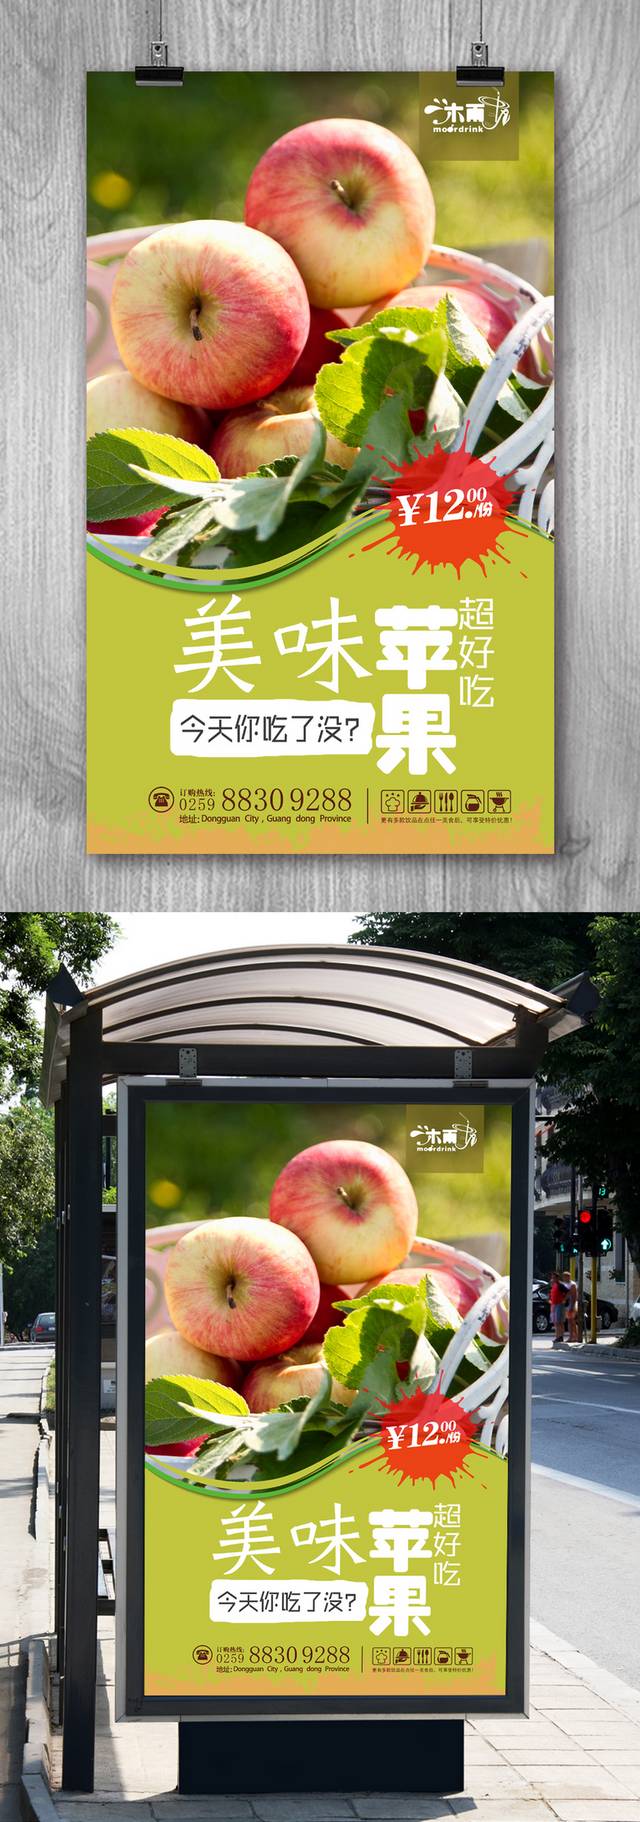 美味苹果促销海报设计模板